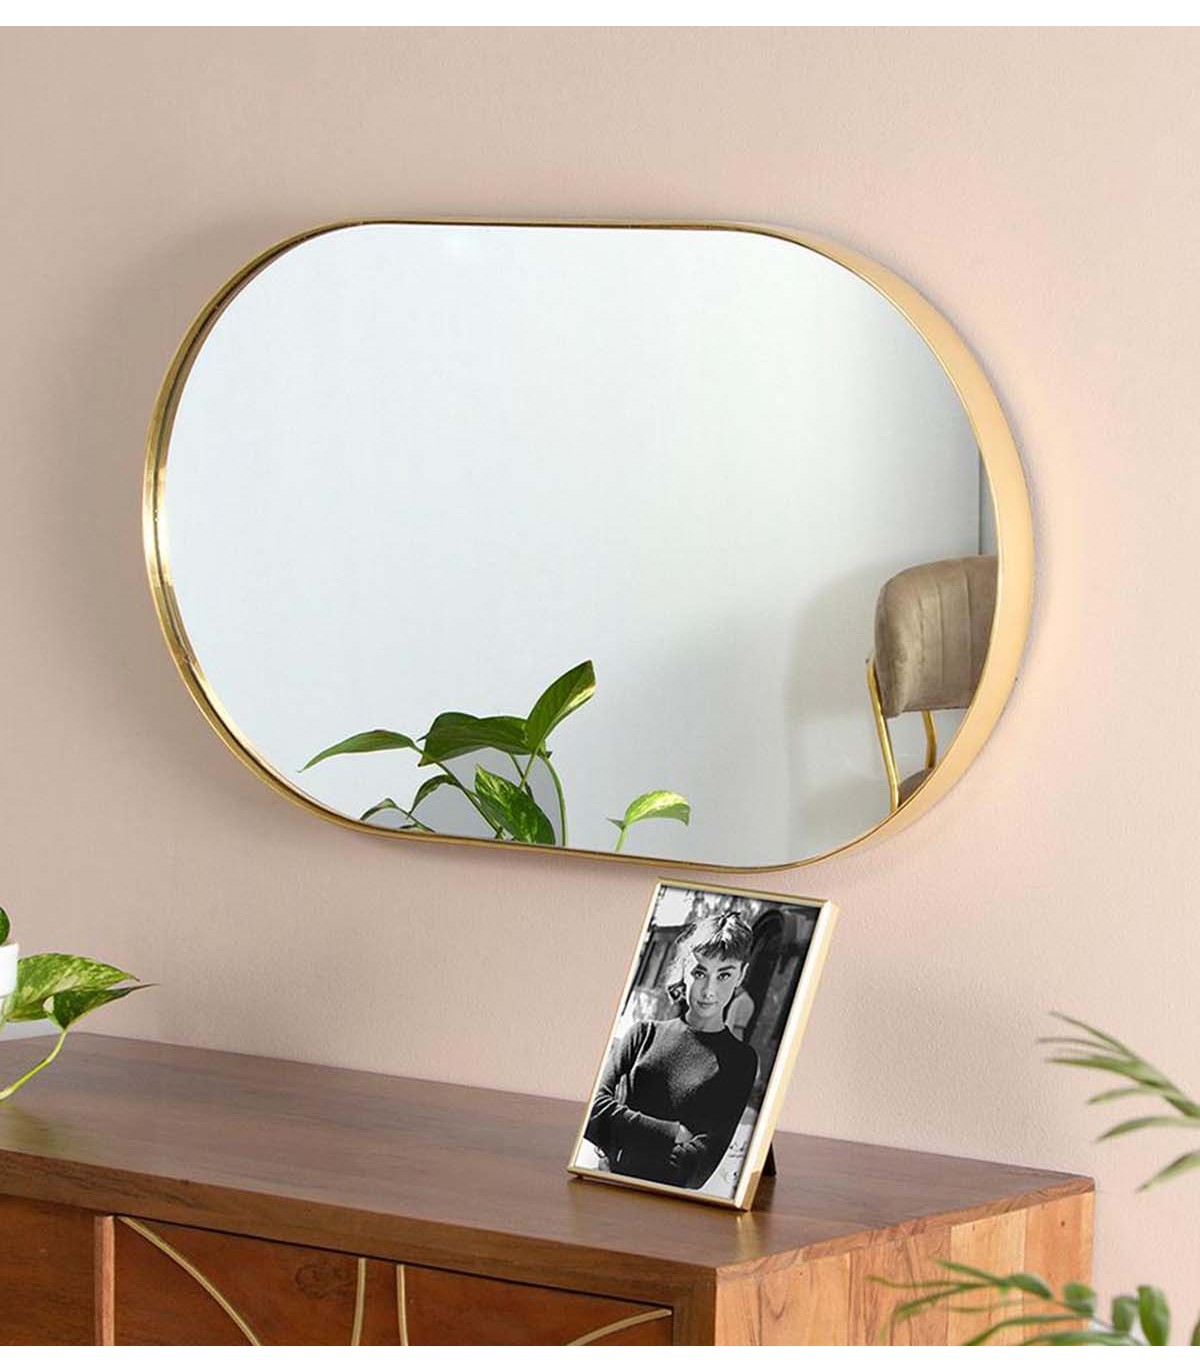 Espejo decorativo con marco de madera envejecida, espejo decorativo de  pared estilo rústico (ovalado)